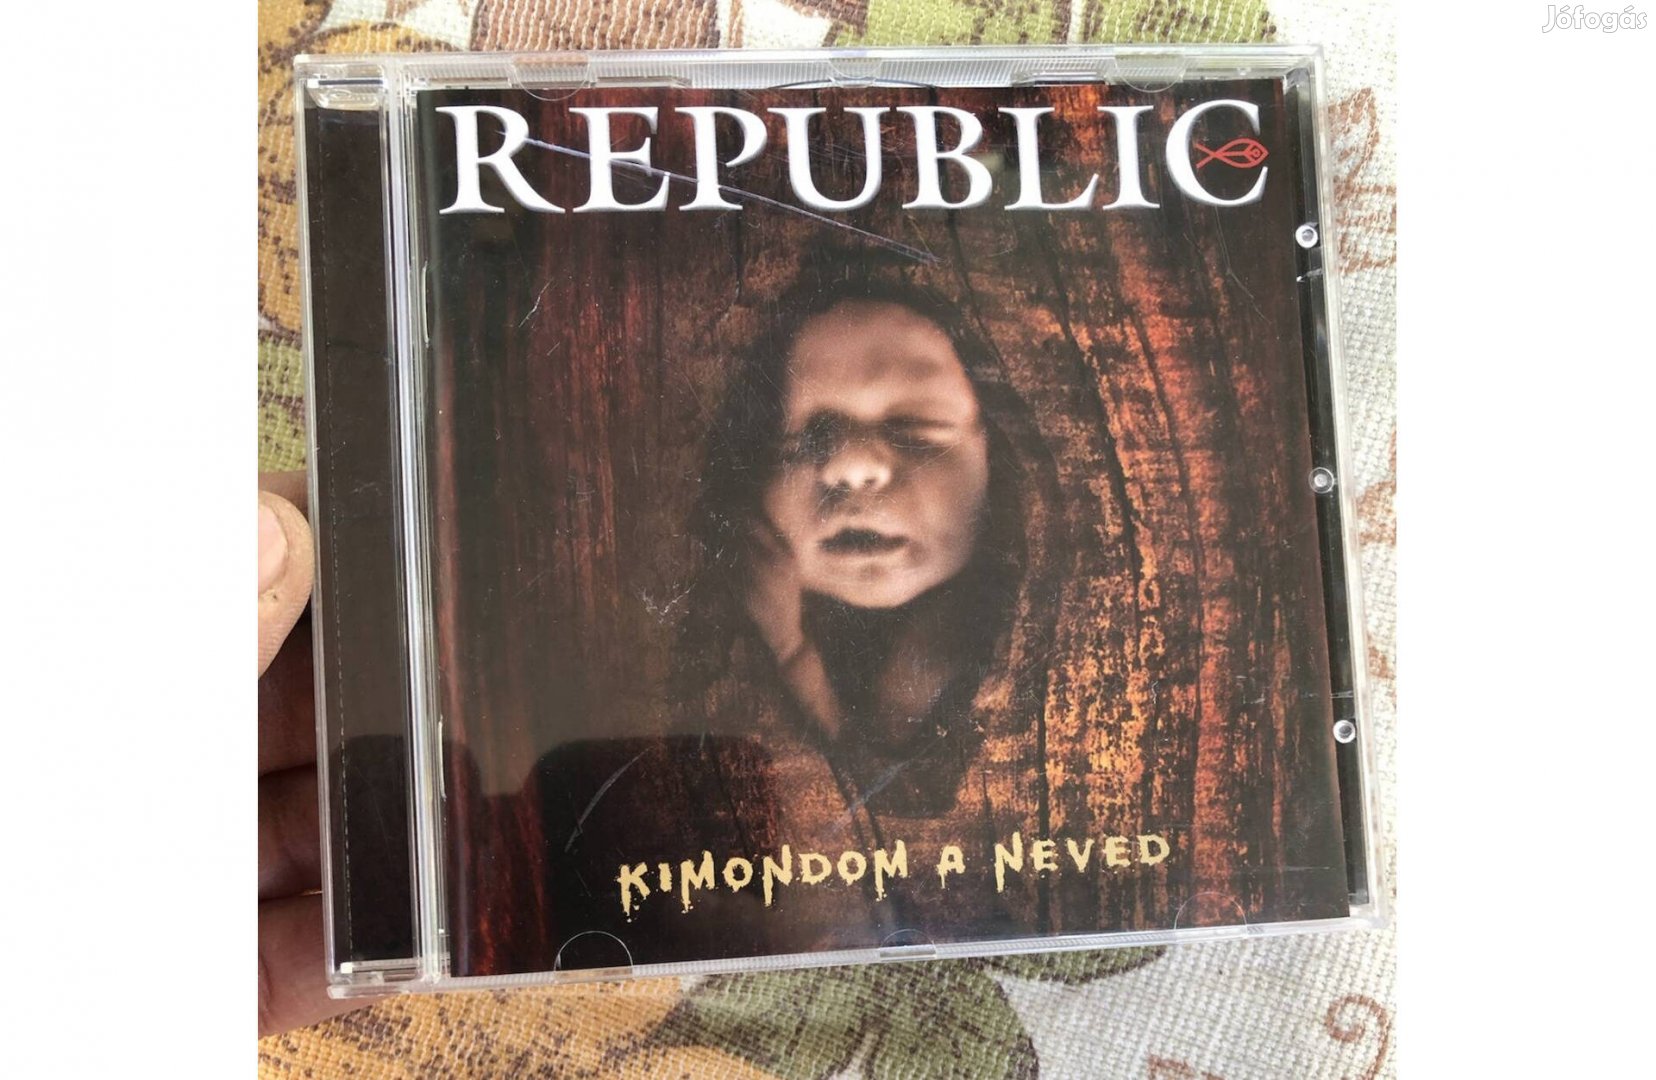 Republic -Kimondom a neved CD 2000 Ft :Lenti